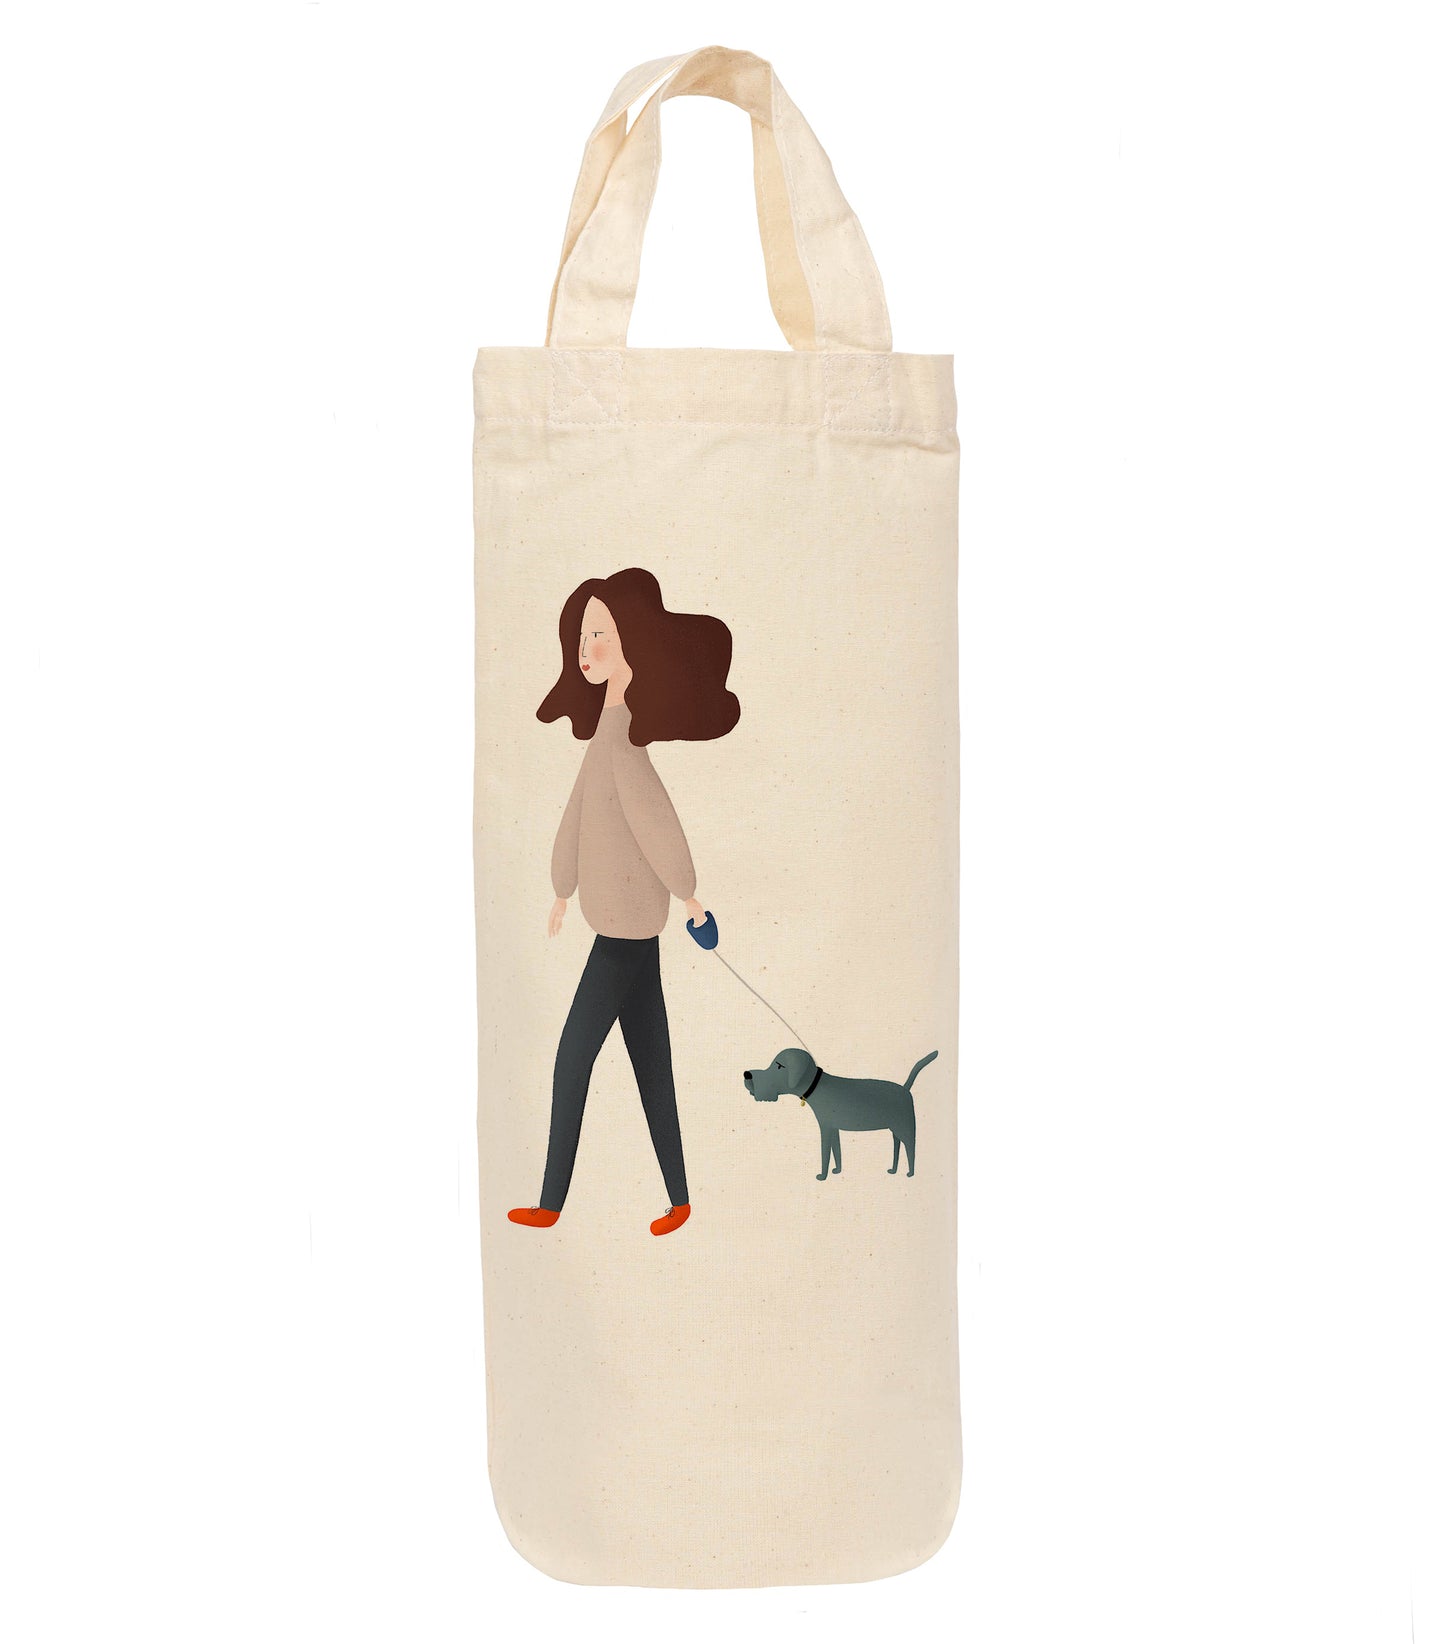 Walking dog bottle bag - wine tote - gift bag